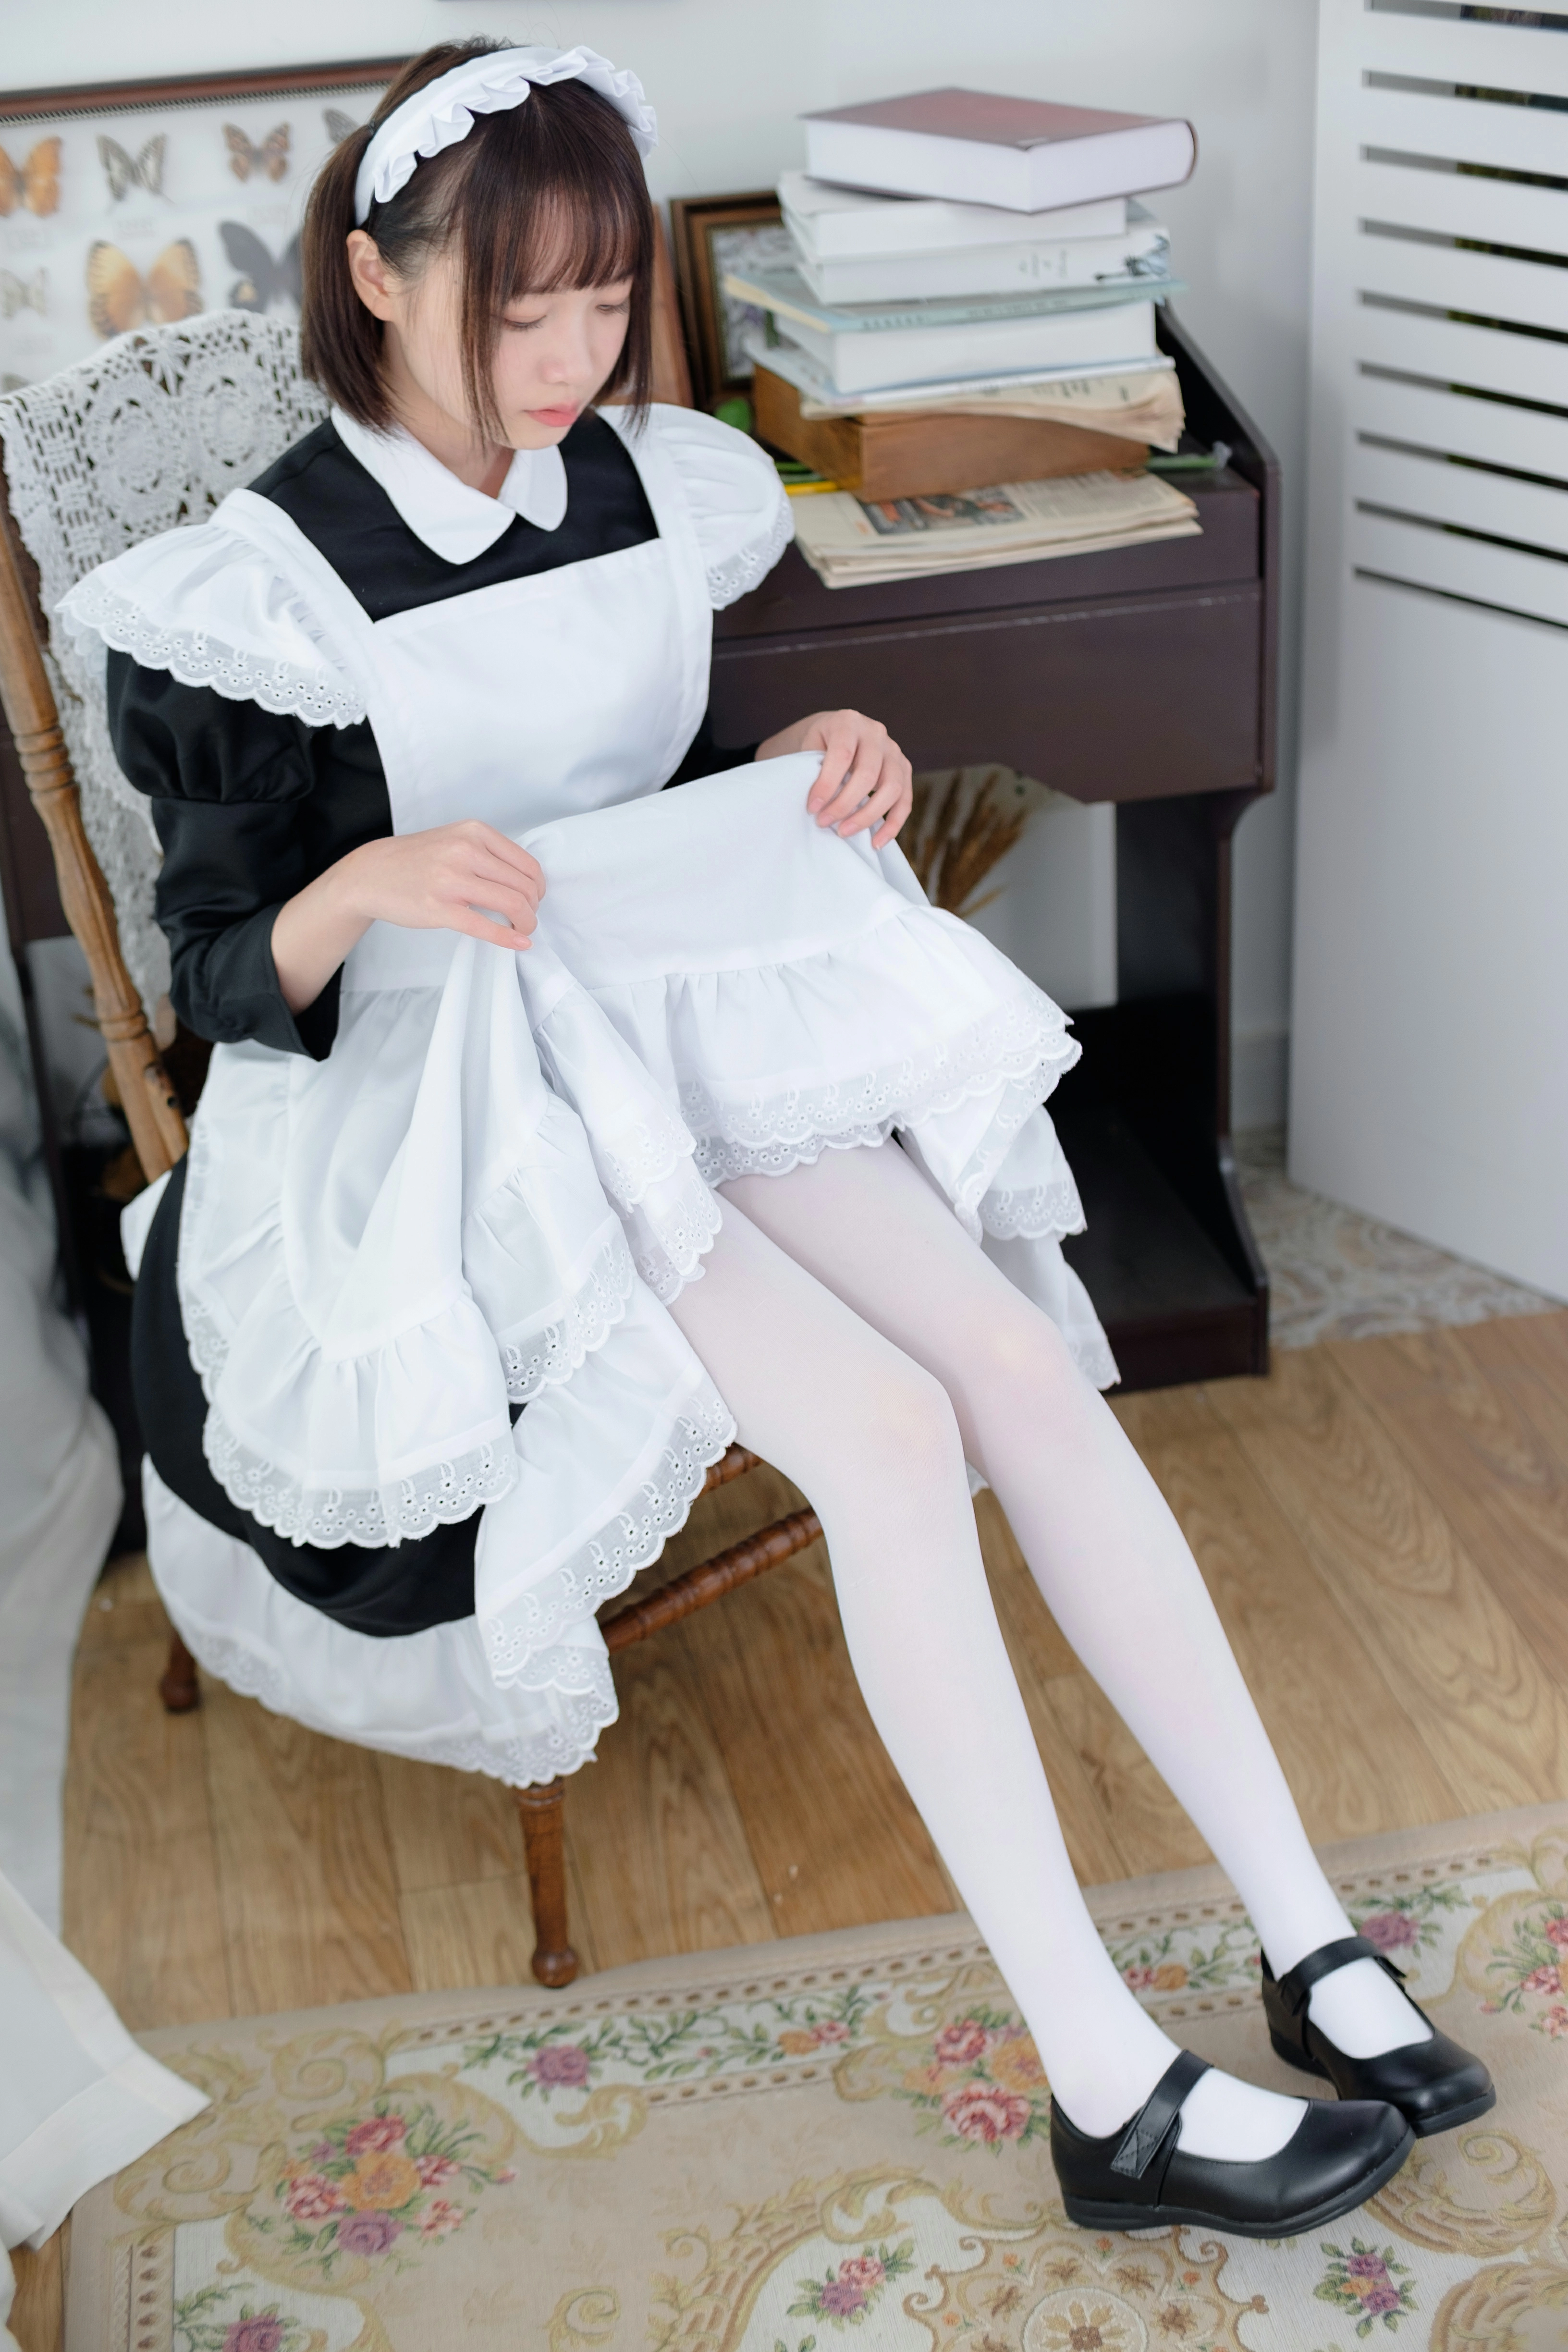 [森萝财团]SSR-005 可爱的女仆 清纯小萝莉 性感女仆制服加白色丝袜美腿玉足私房写真集,